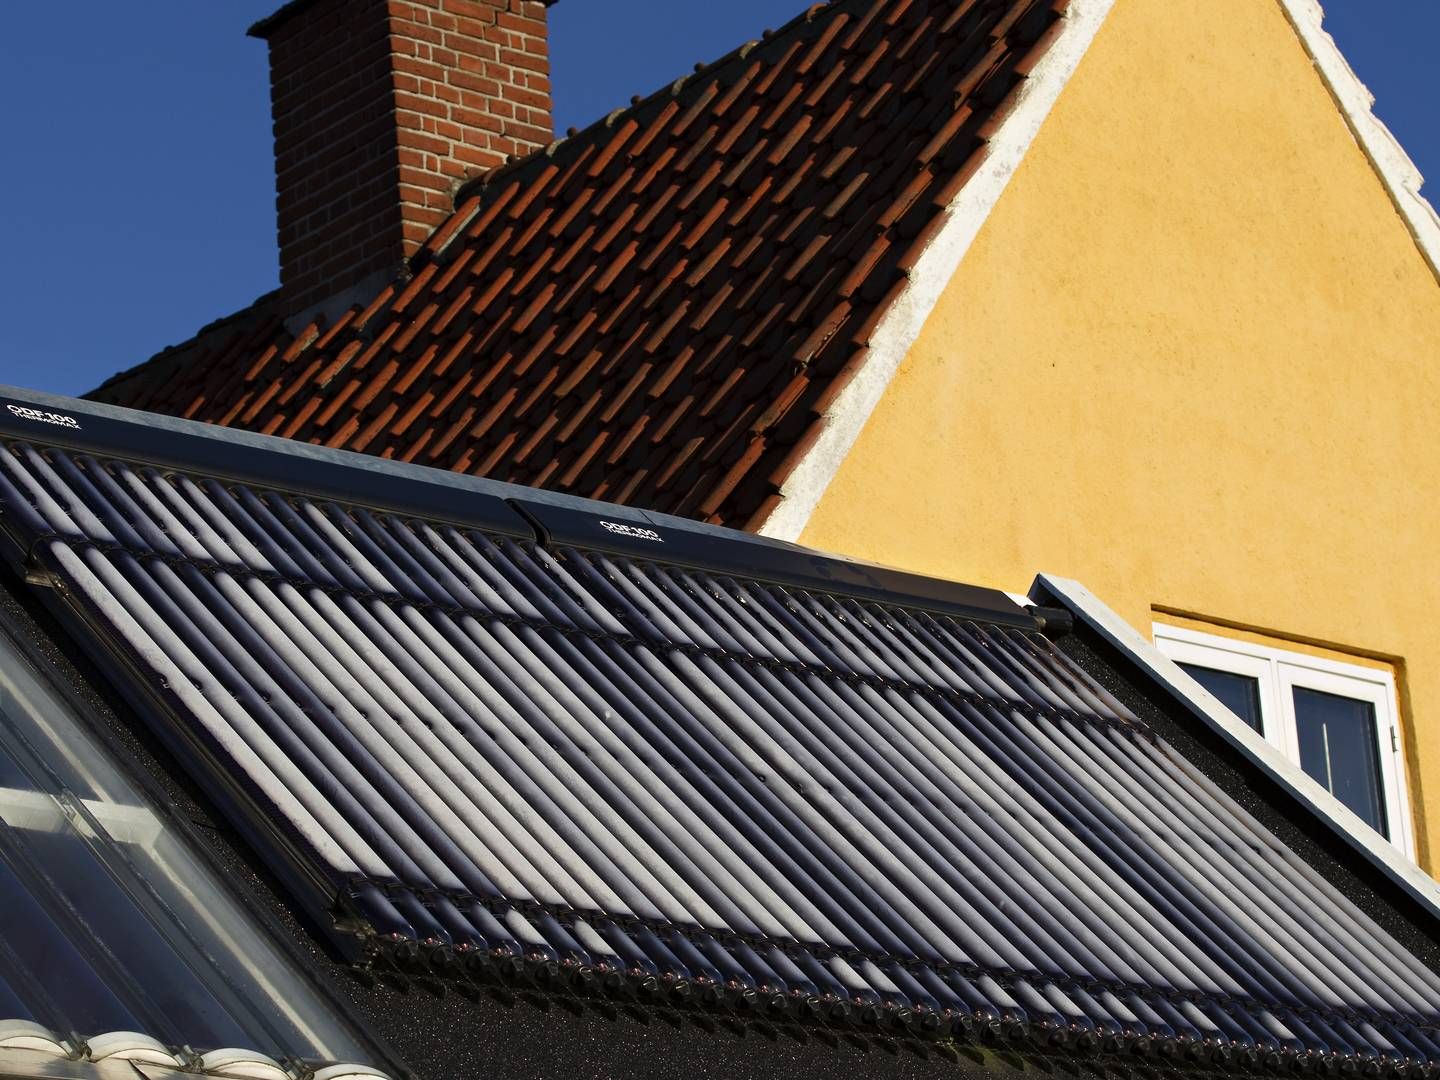 Det næste år skal detfor eksempel være meget hurtigere at få solceller på sit tag ifølge en ny nødforordning om vedvarende energiprojekter, som EU-Kommissionen har foreslået. | Foto: Jacob Ehrbahn